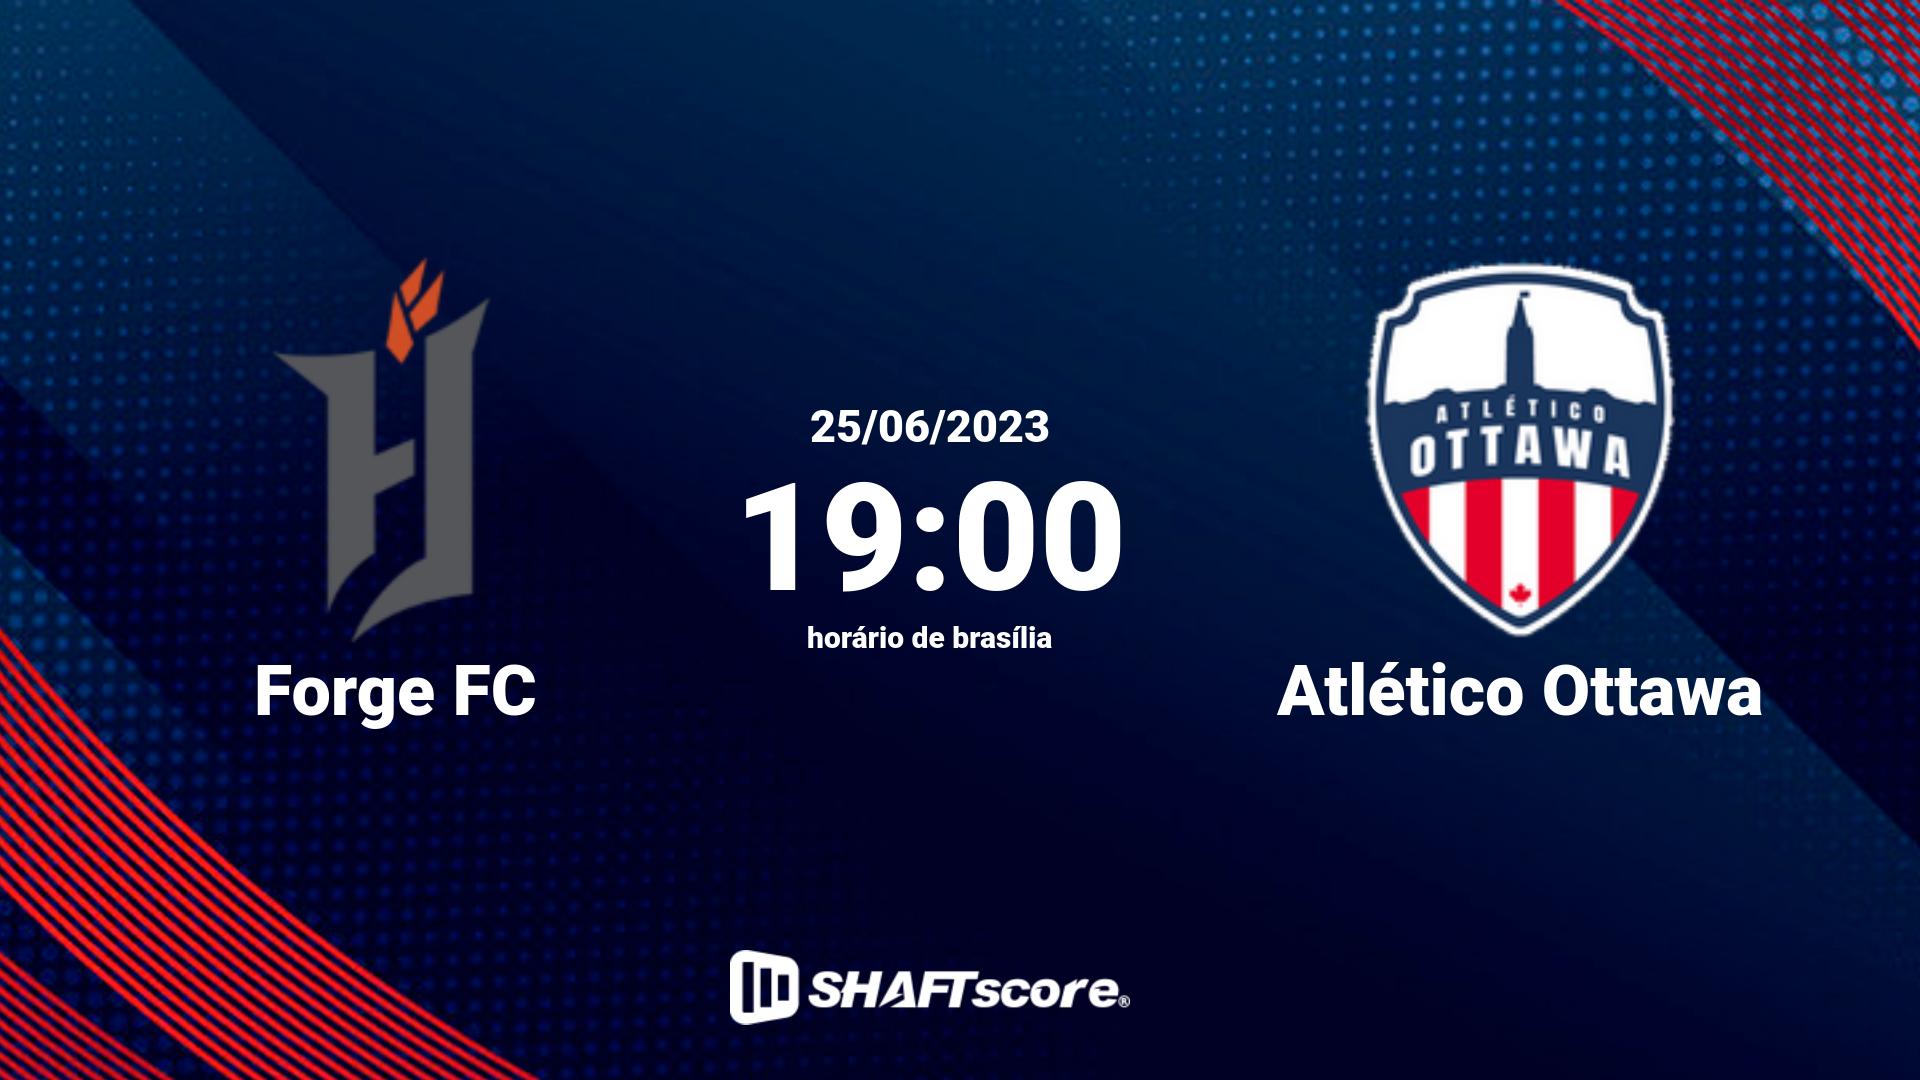 Estatísticas do jogo Forge FC vs Atlético Ottawa 25.06 19:00